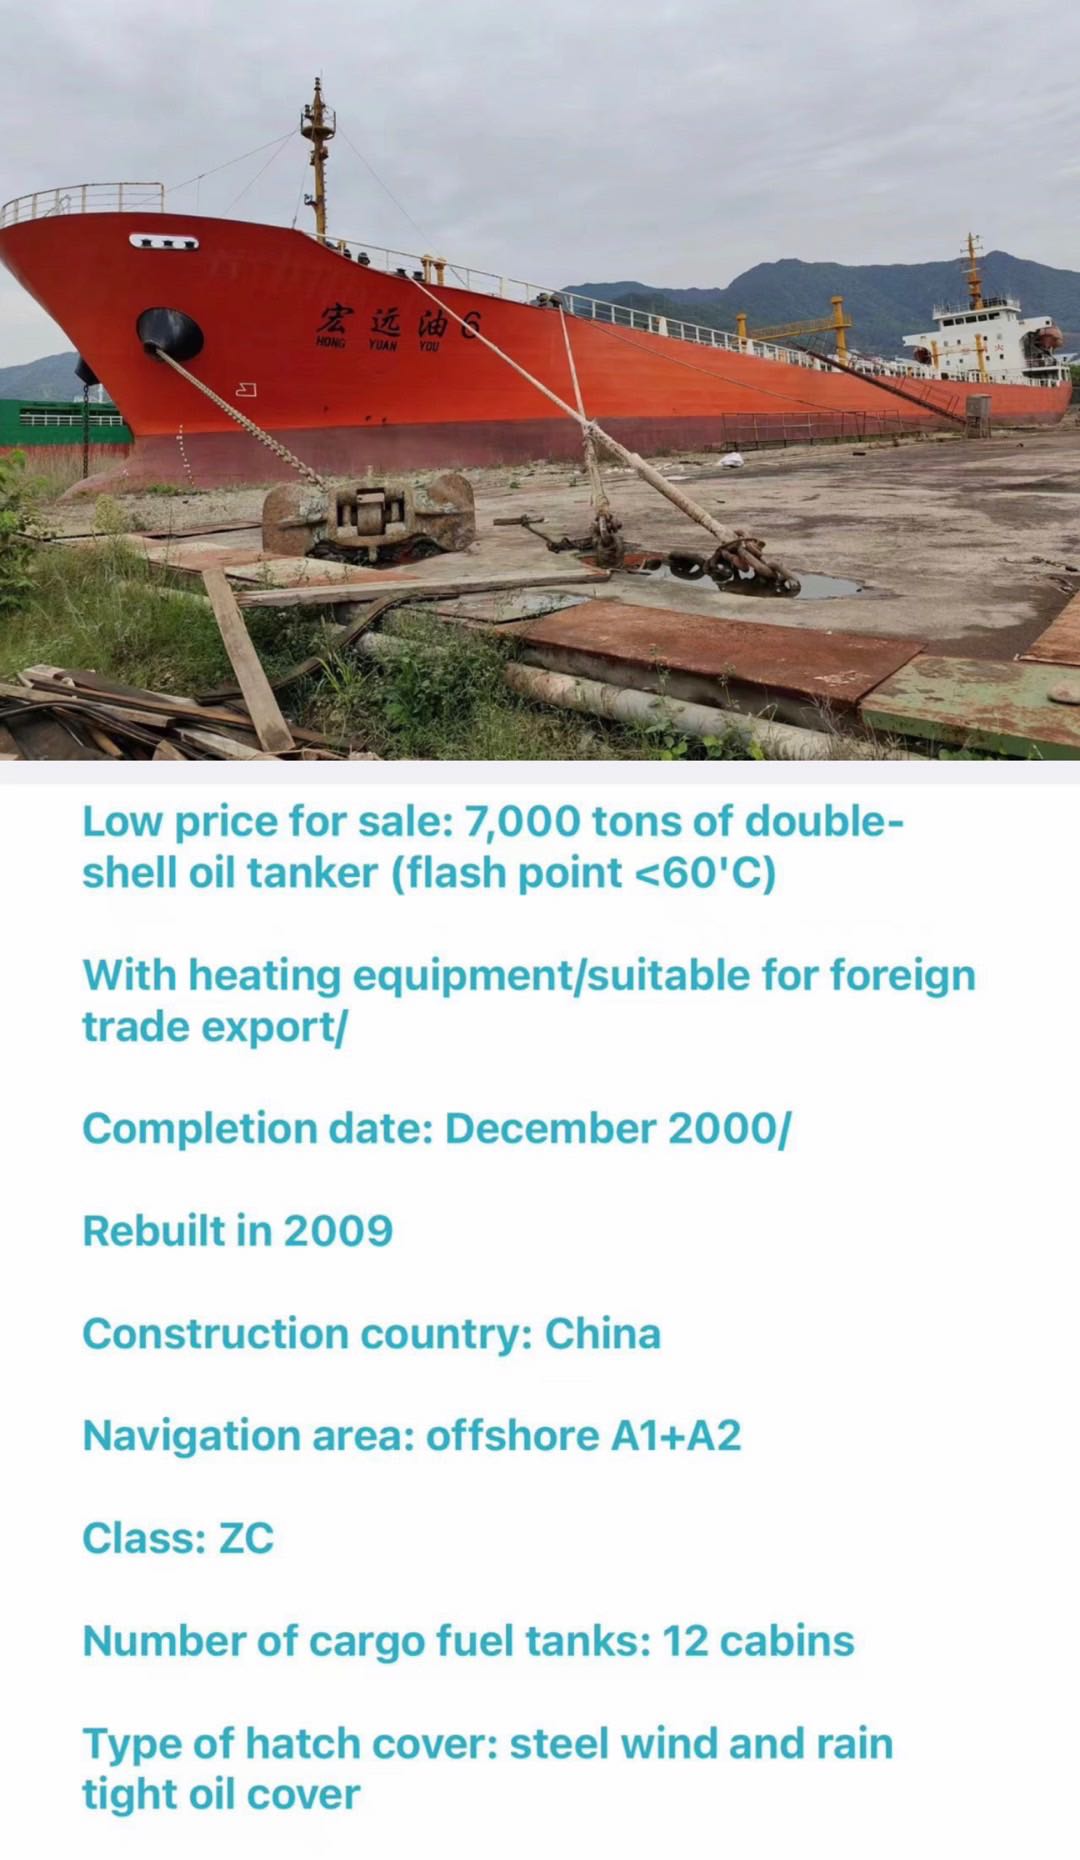 低价出售：7000吨双壳油船 带加温设备/适合外贸出口/ 完工日期：2000年12月/ 2009年改建